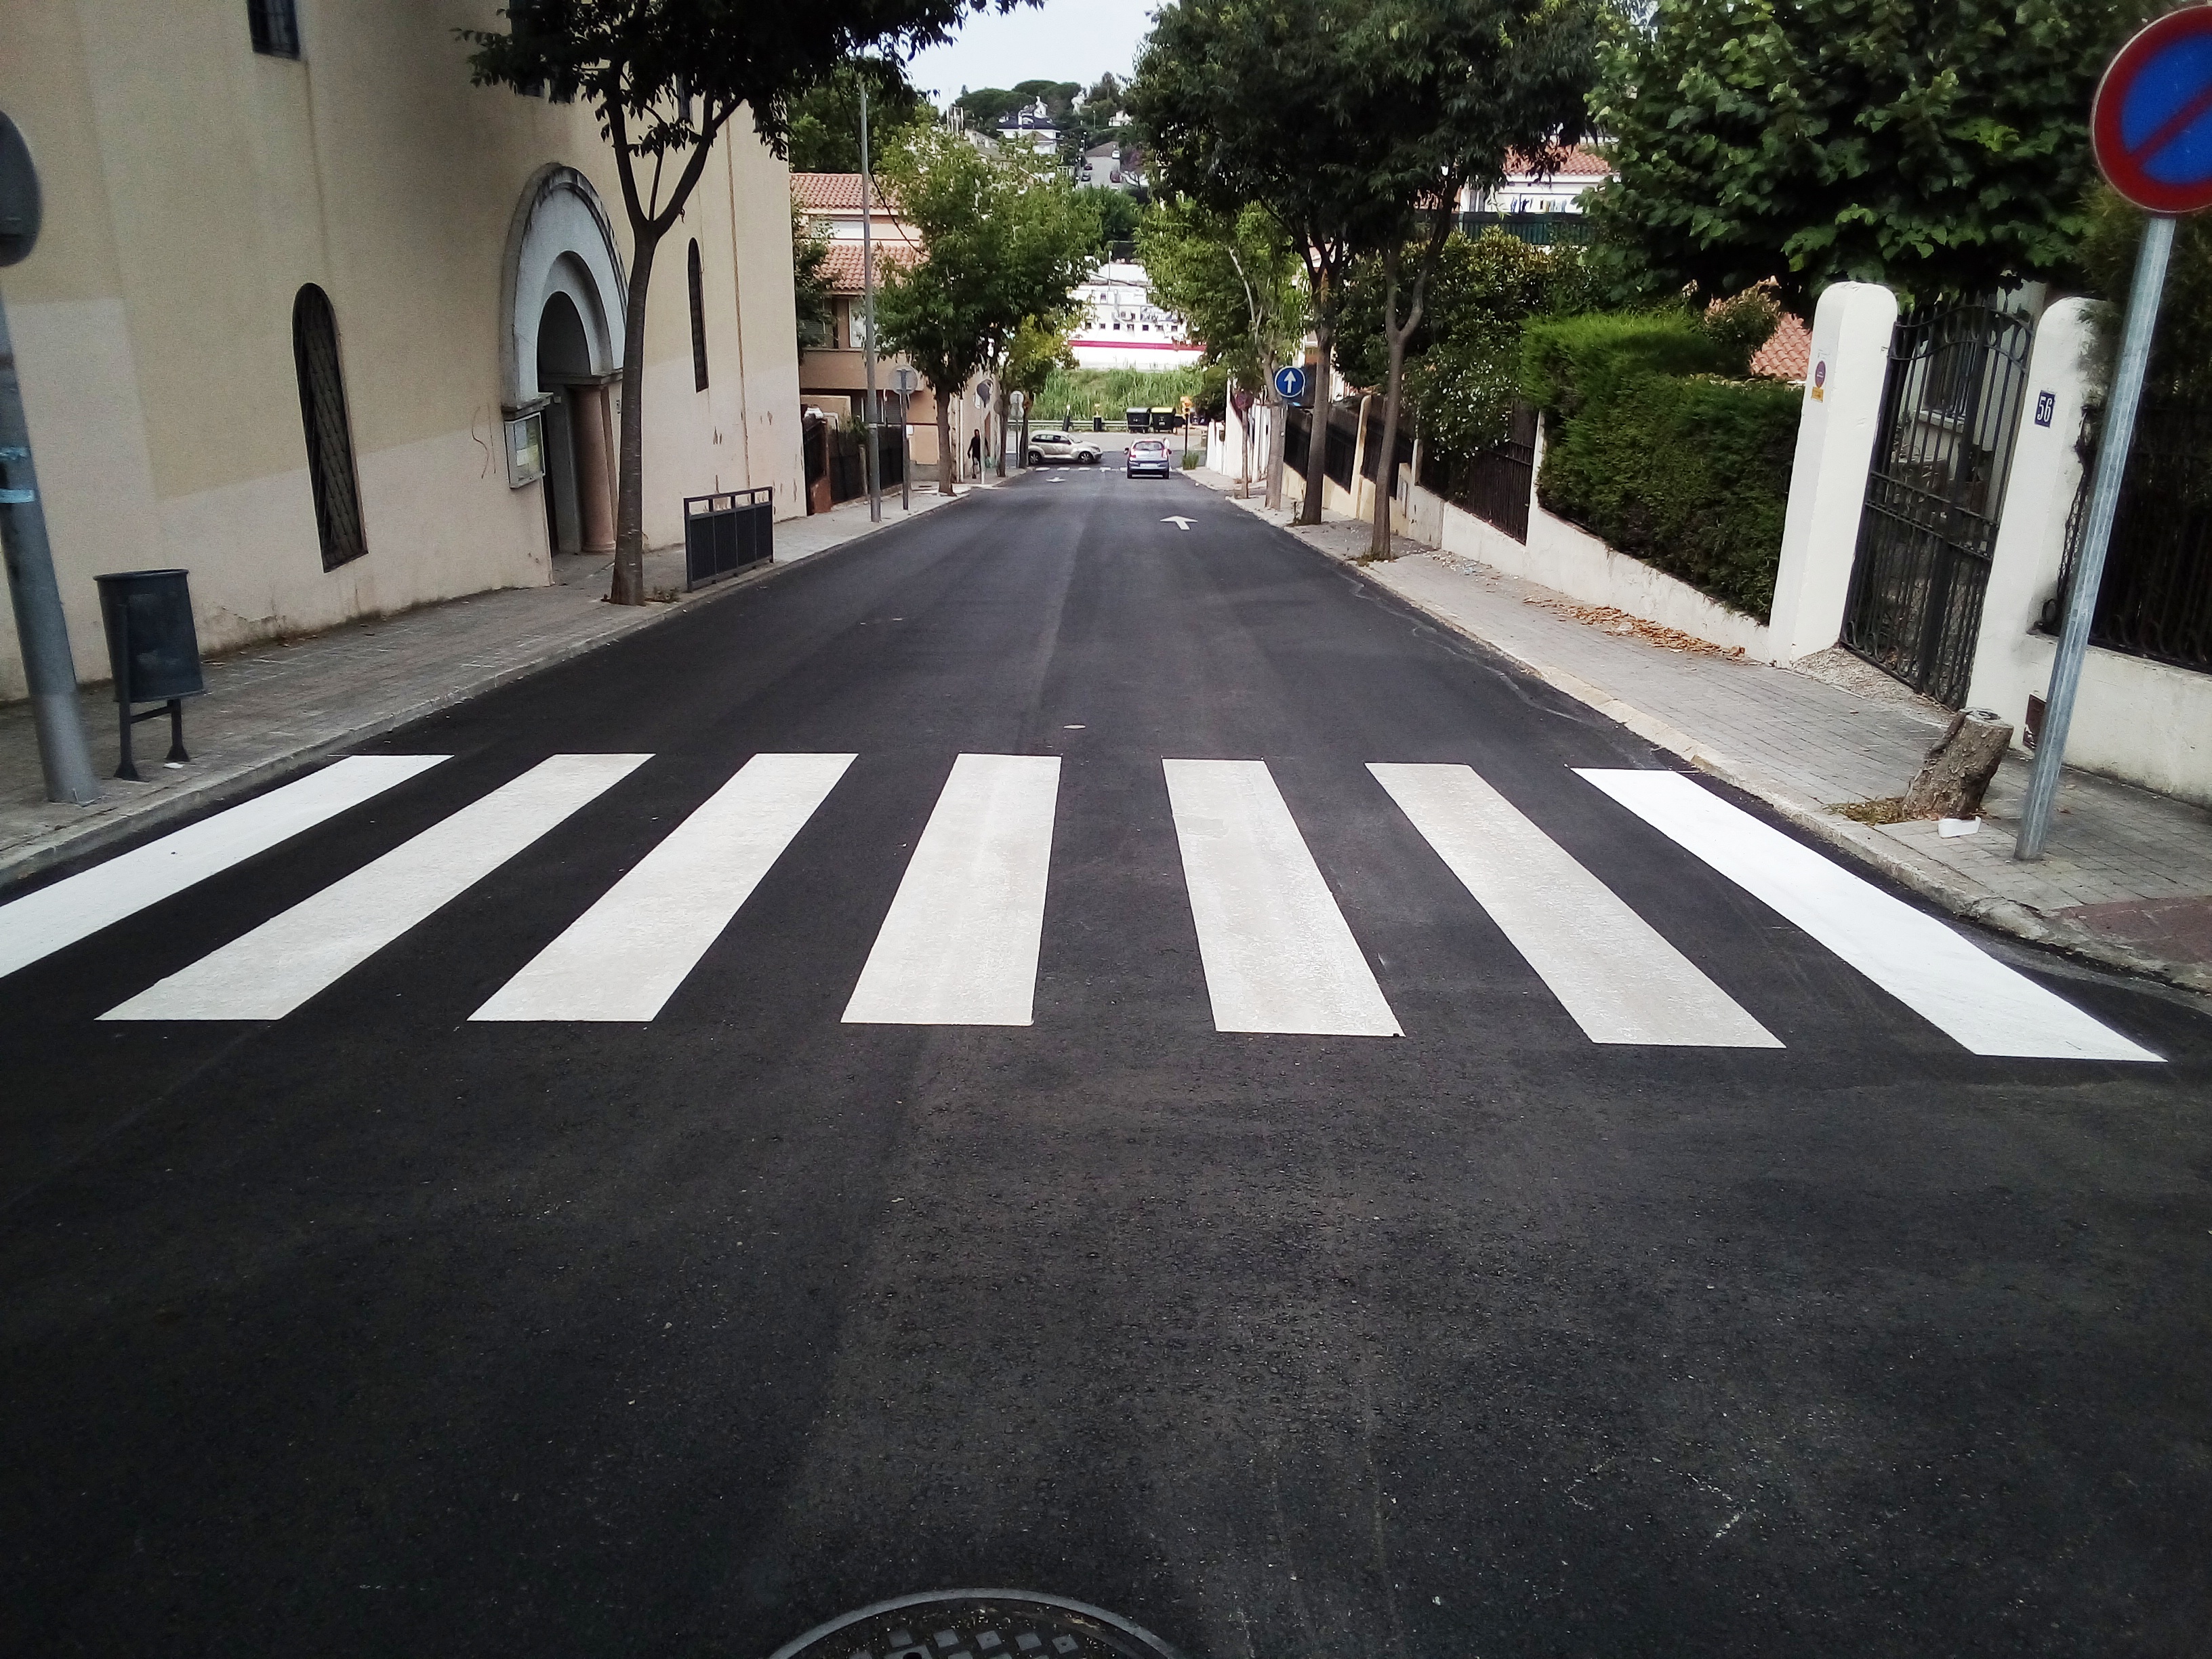 Manteniment a la via pública: asfaltatge, pintura viària i neteja d'escocells